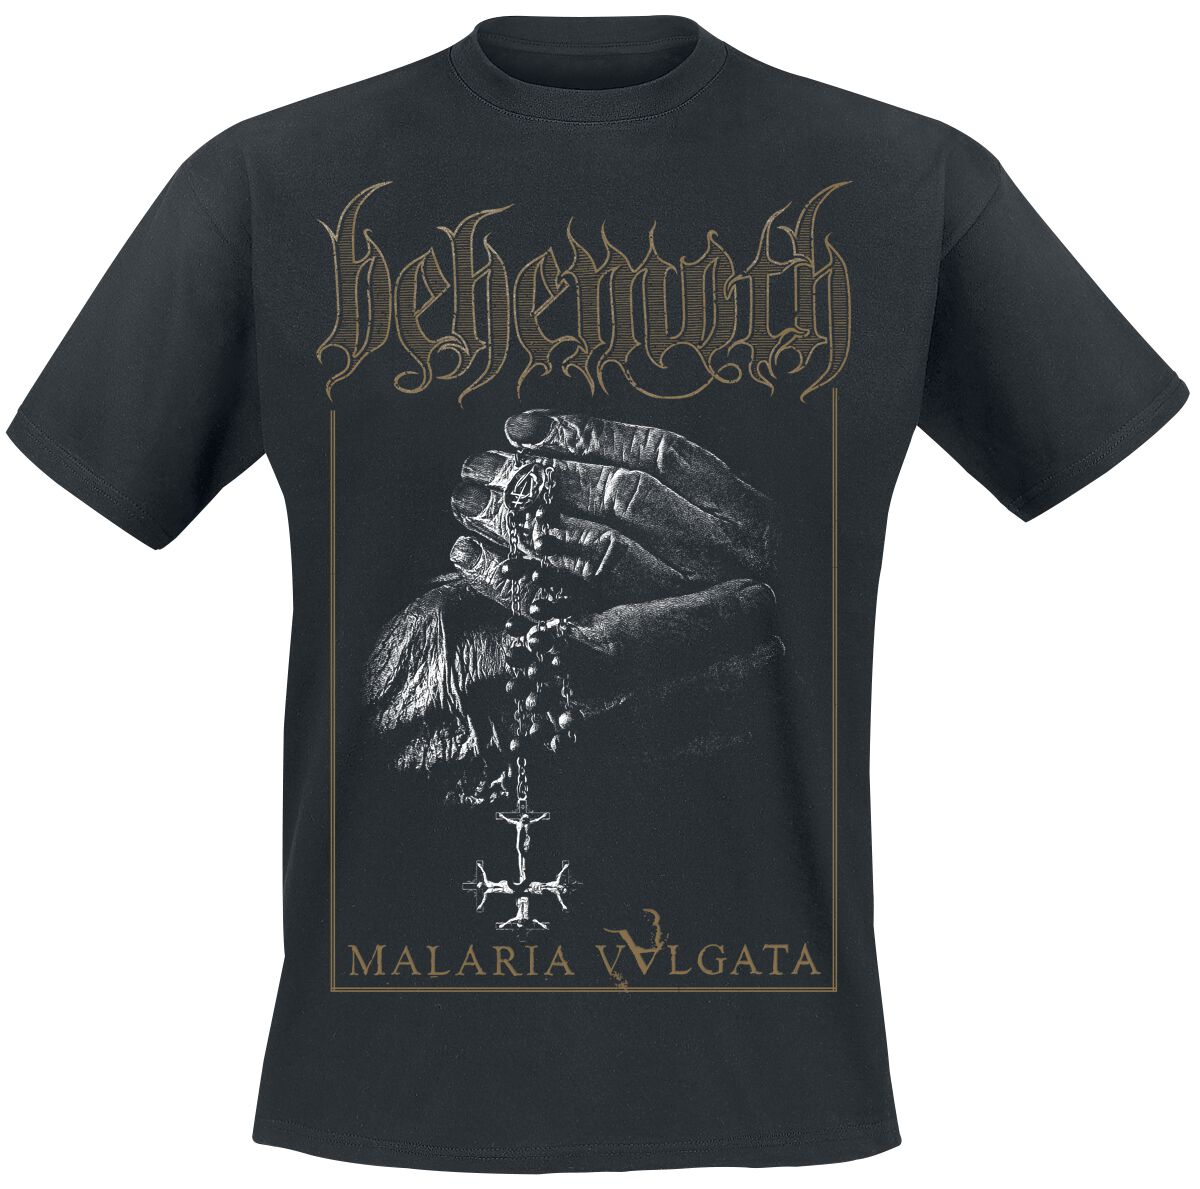 Behemoth T-Shirt - Malaria Vvlgata - S bis XXL - für Männer - Größe L - schwarz  - Lizenziertes Merchandise!